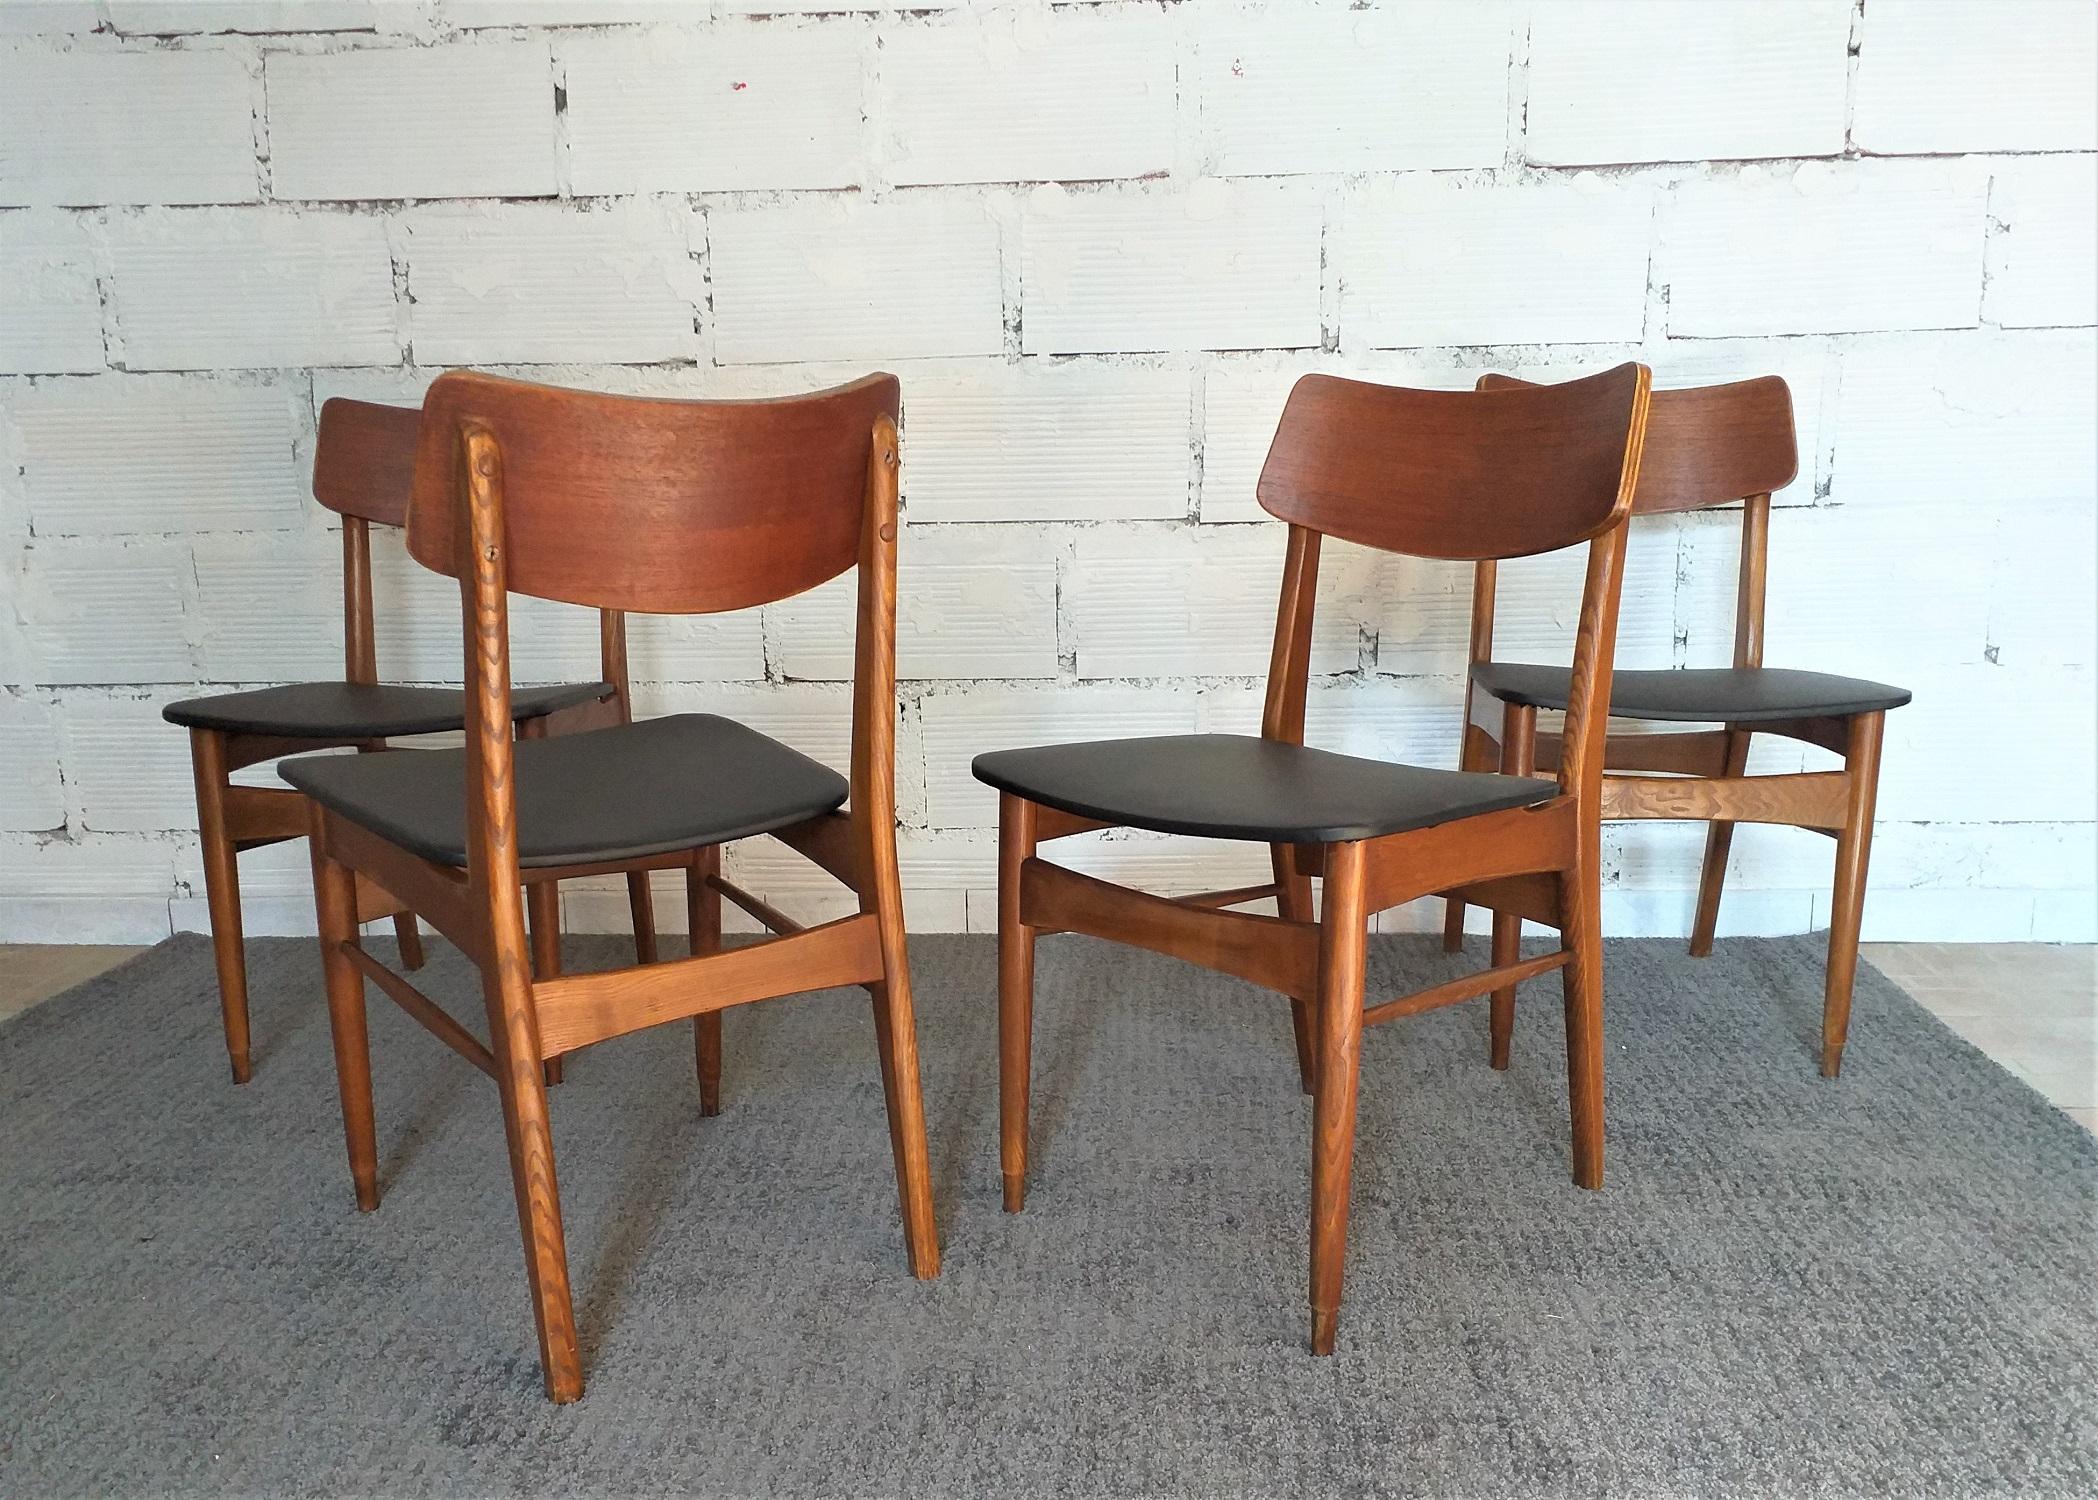 Lot de 4 chaises en bois teinté recouvertes de simili cuir.
Le bois est attaqué ici et là par des vers et nécessite un traitement. Le simili est à remplacer.